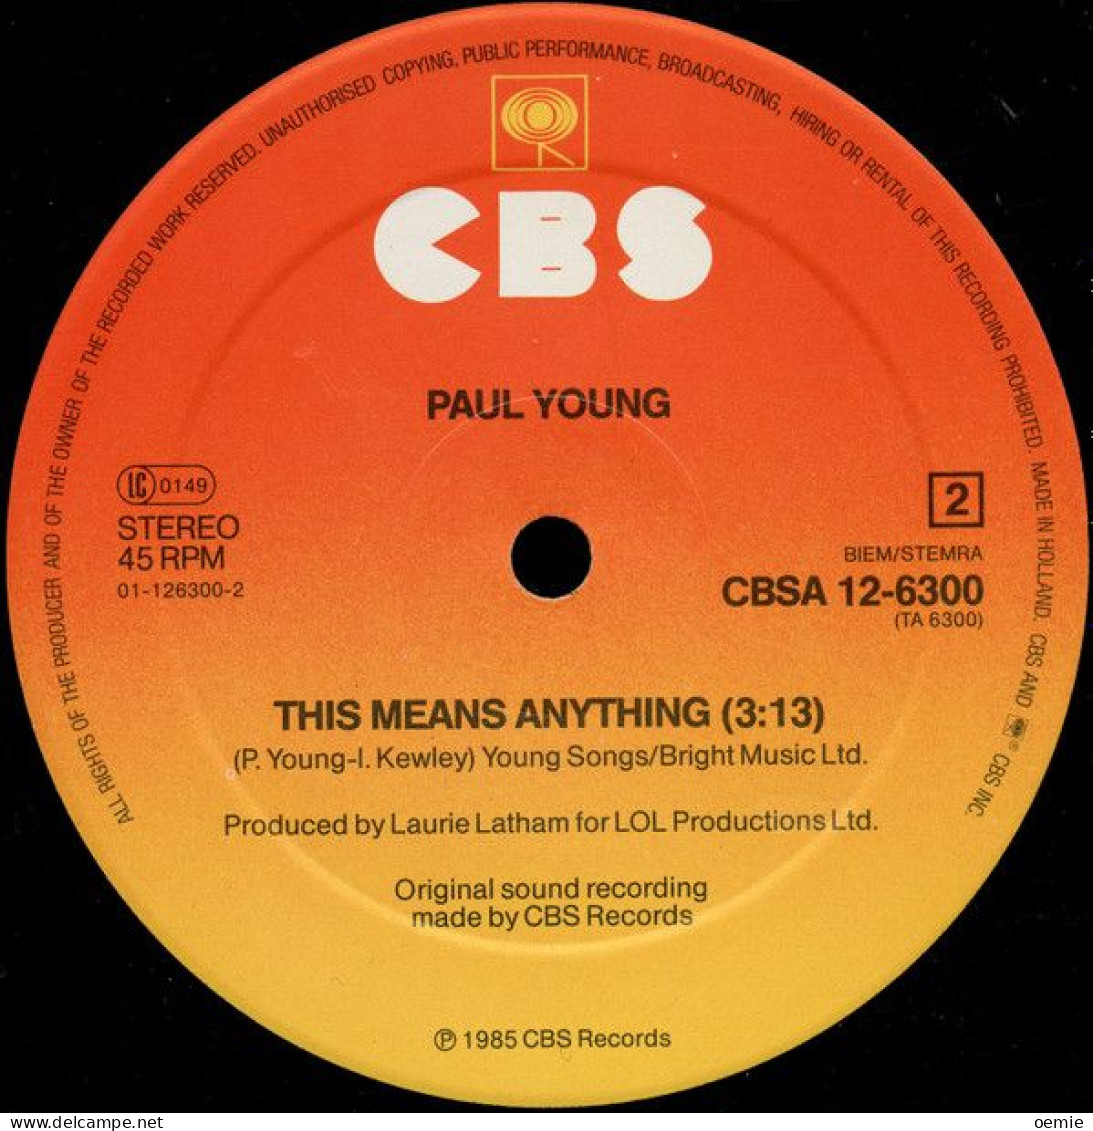 PAUL YOUNG EVERY YOU GO AWAY - 45 Toeren - Maxi-Single